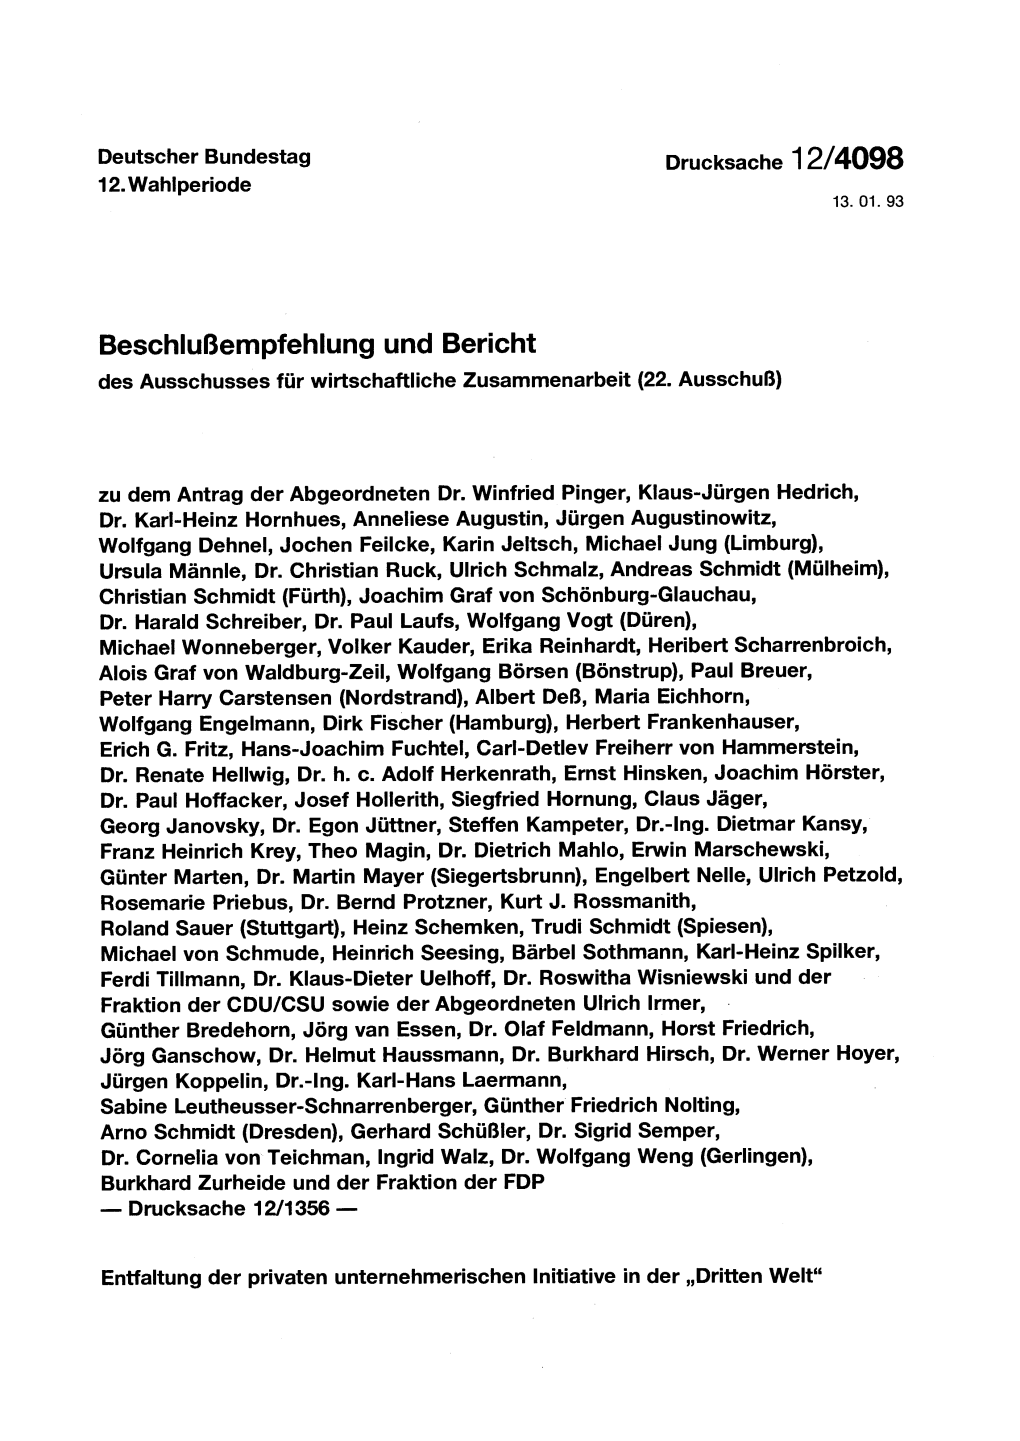 Beschlußempfehlung Und Bericht Des Ausschusses Für Wirtscha Ftliche Zusammenarbeit (22